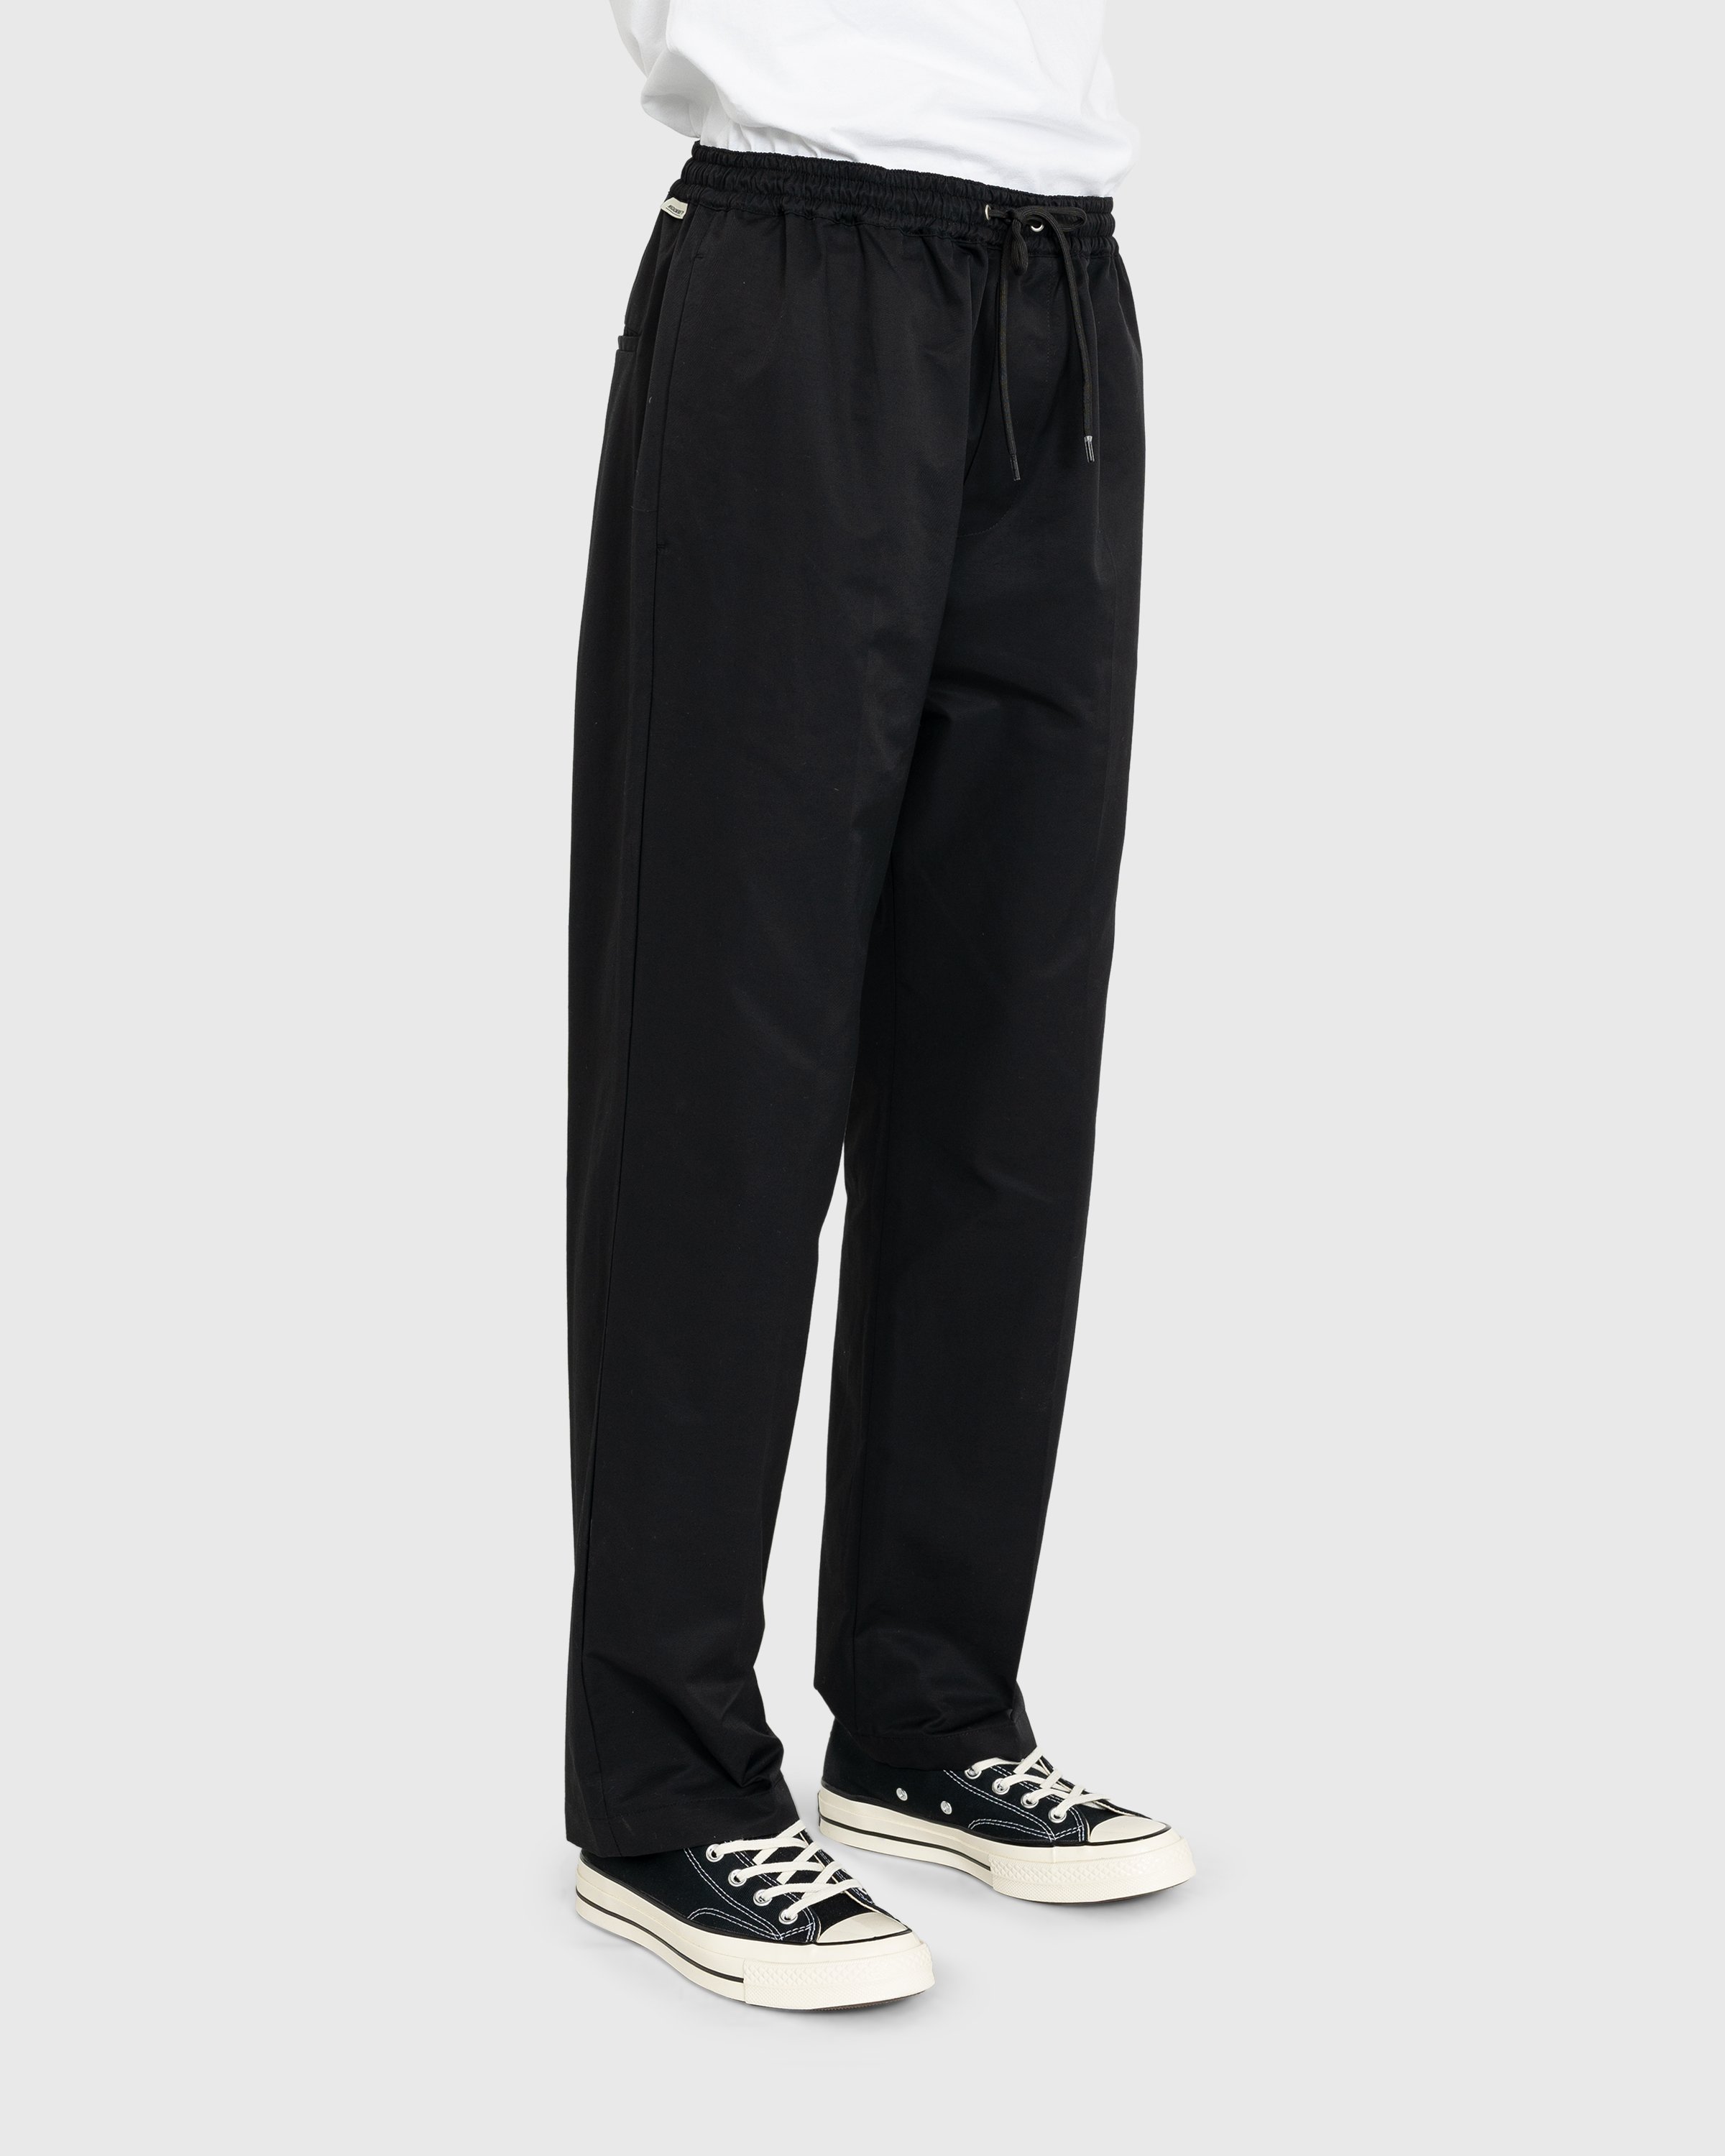 Highsnobiety - Cotton Nylon Elastic Pants Black - Clothing - Black - Image 4